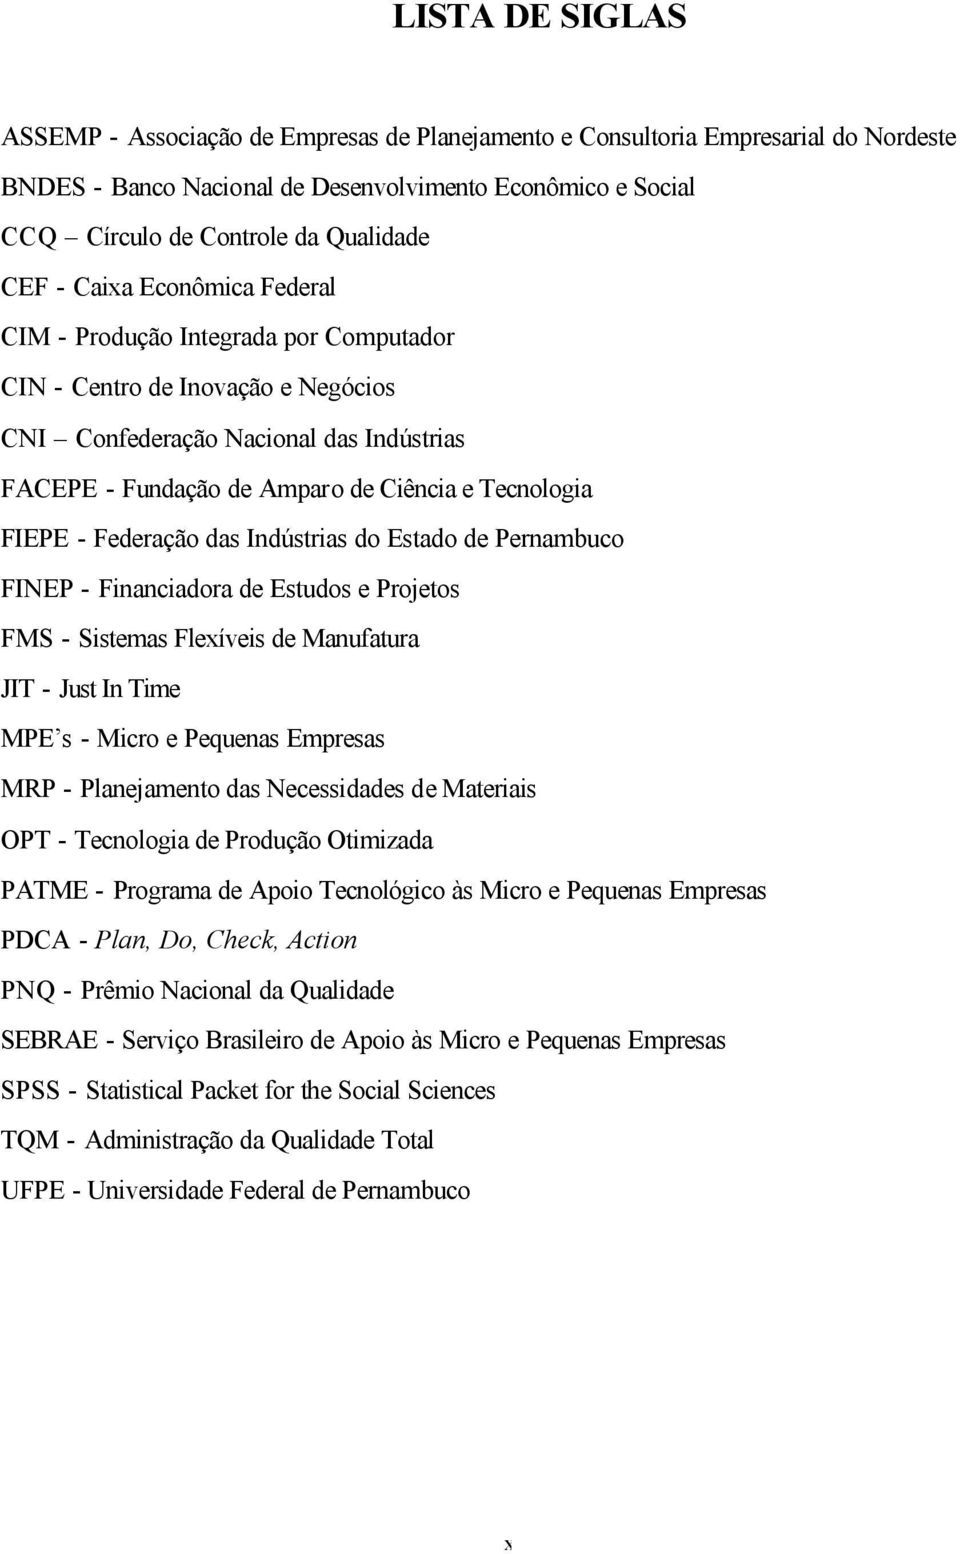 FIEPE - Federação das Indústrias do Estado de Pernambuco FINEP - Financiadora de Estudos e Projetos FMS - Sistemas Flexíveis de Manufatura JIT - Just In Time MPE s - Micro e Pequenas Empresas MRP -